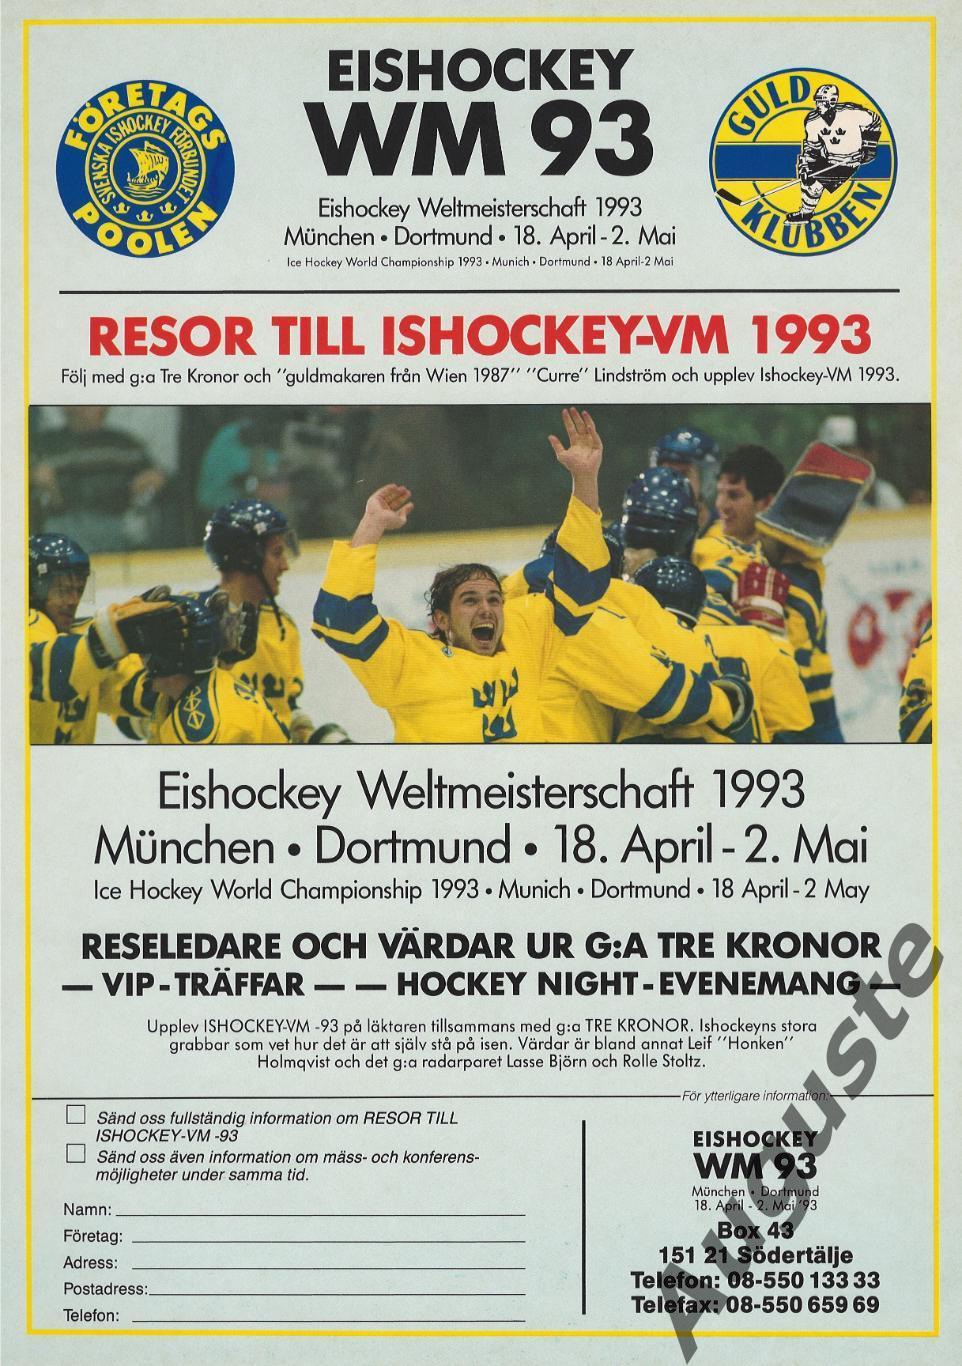 Шведский журнал к чемпионату мира по хоккею в ФРГ 1993 г. Сборная России. 5